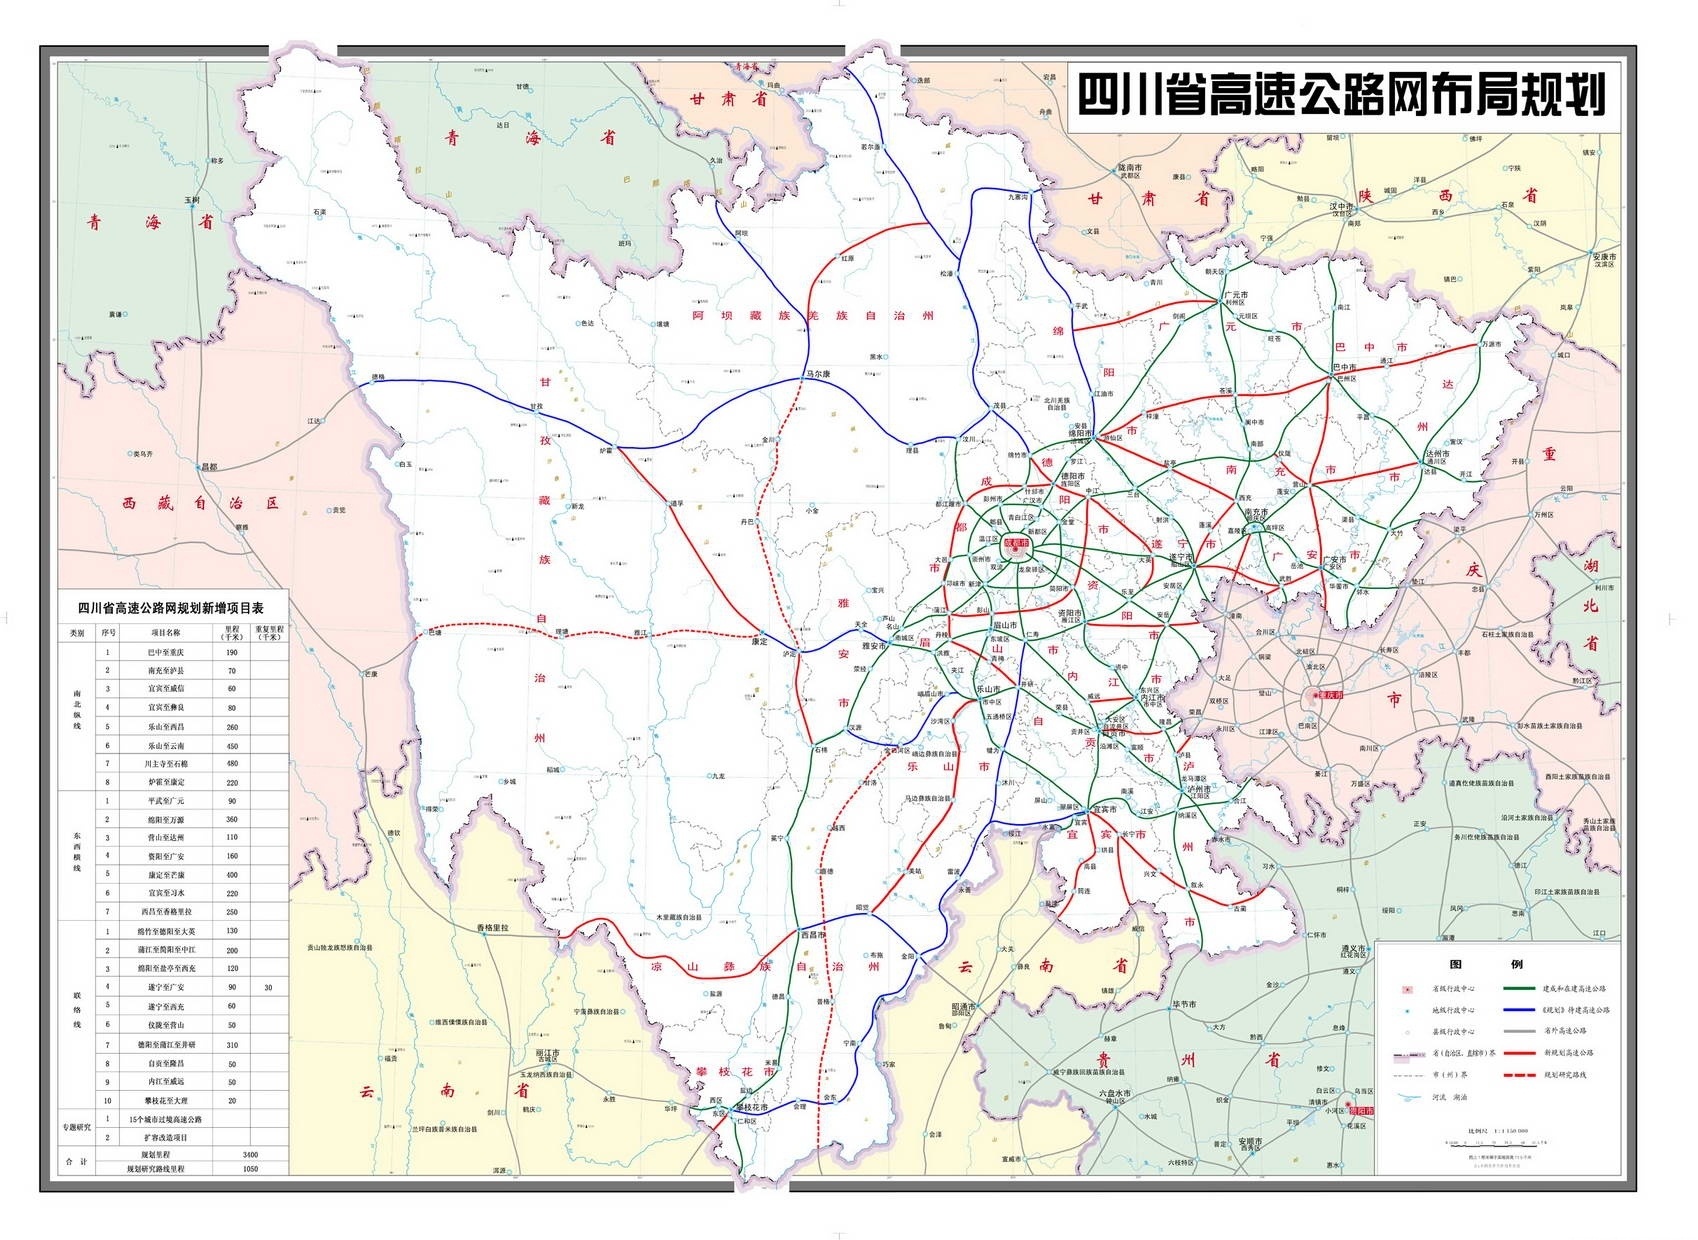 綿萬高速在四川省高速公路網規劃中的位置